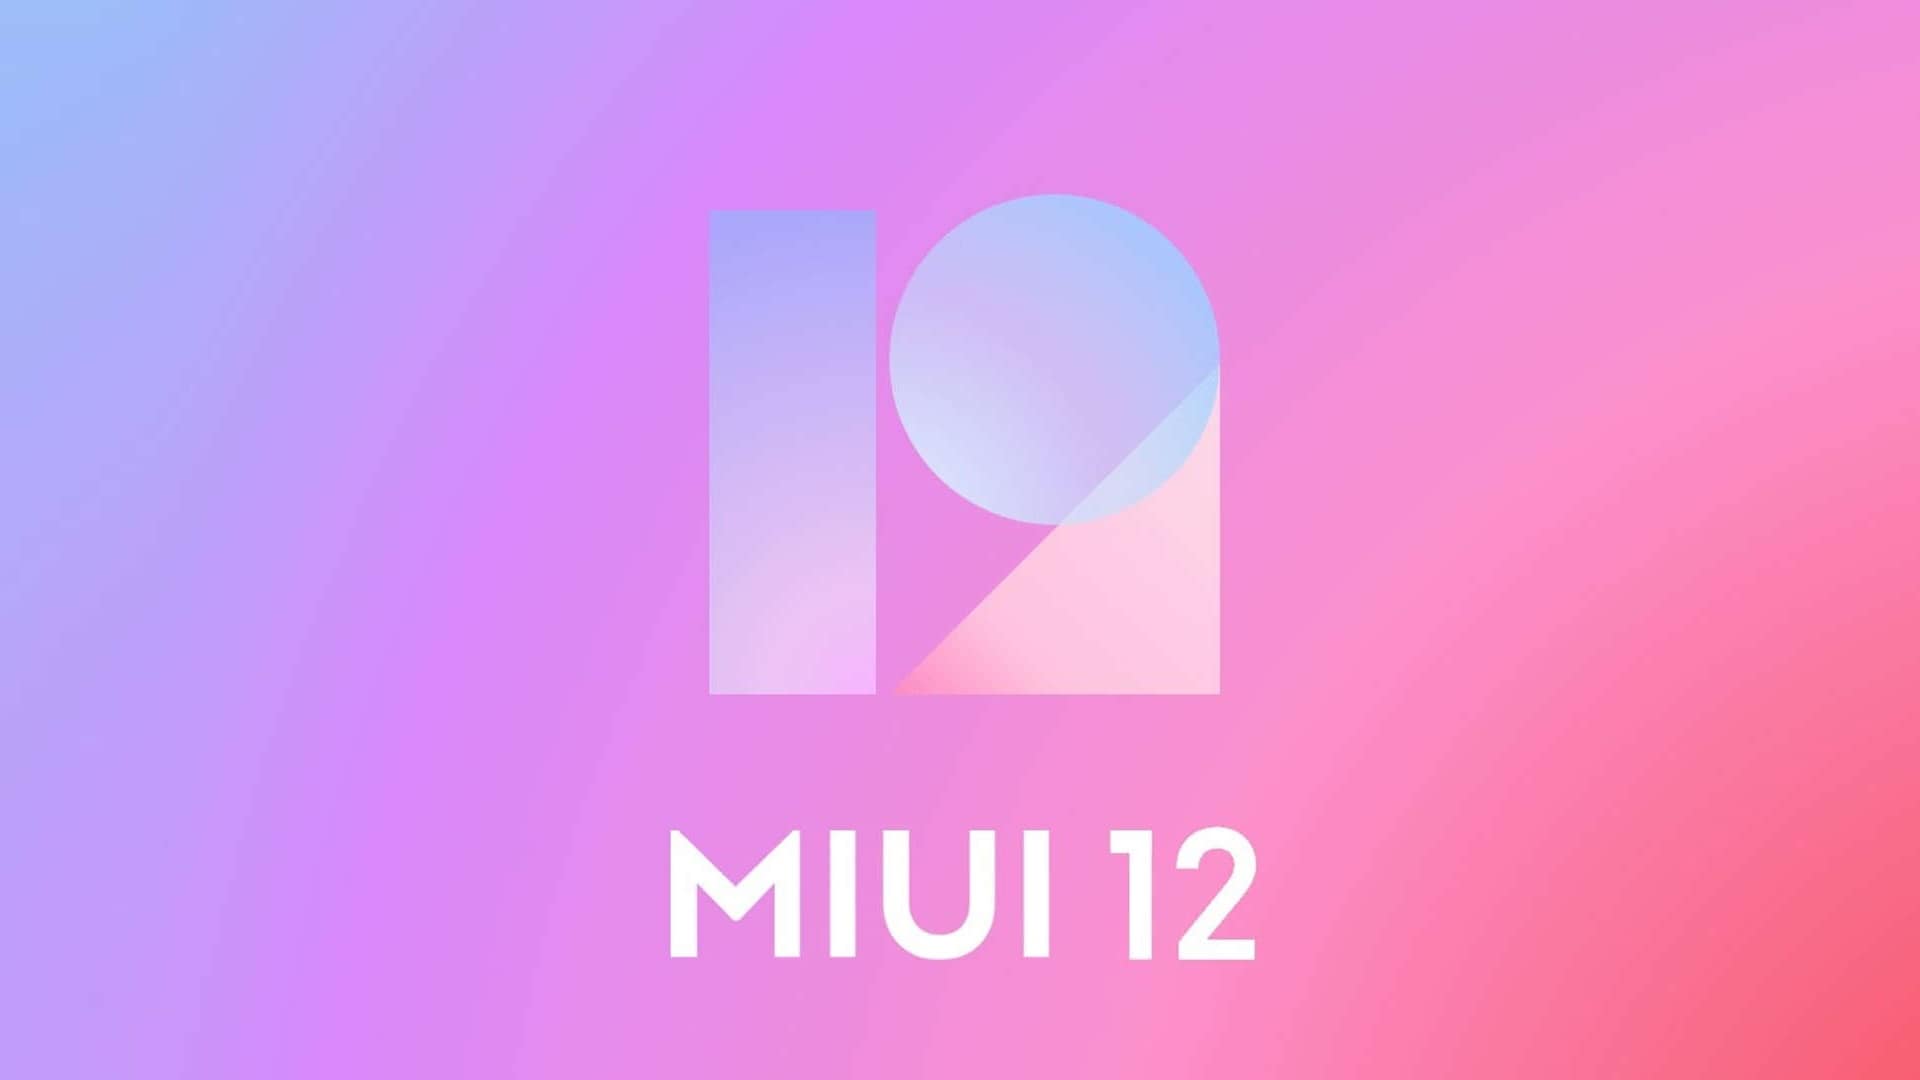 La MIUI 12 ha due nuovi sfondi animati: ecco come provarli subito (foto e download)